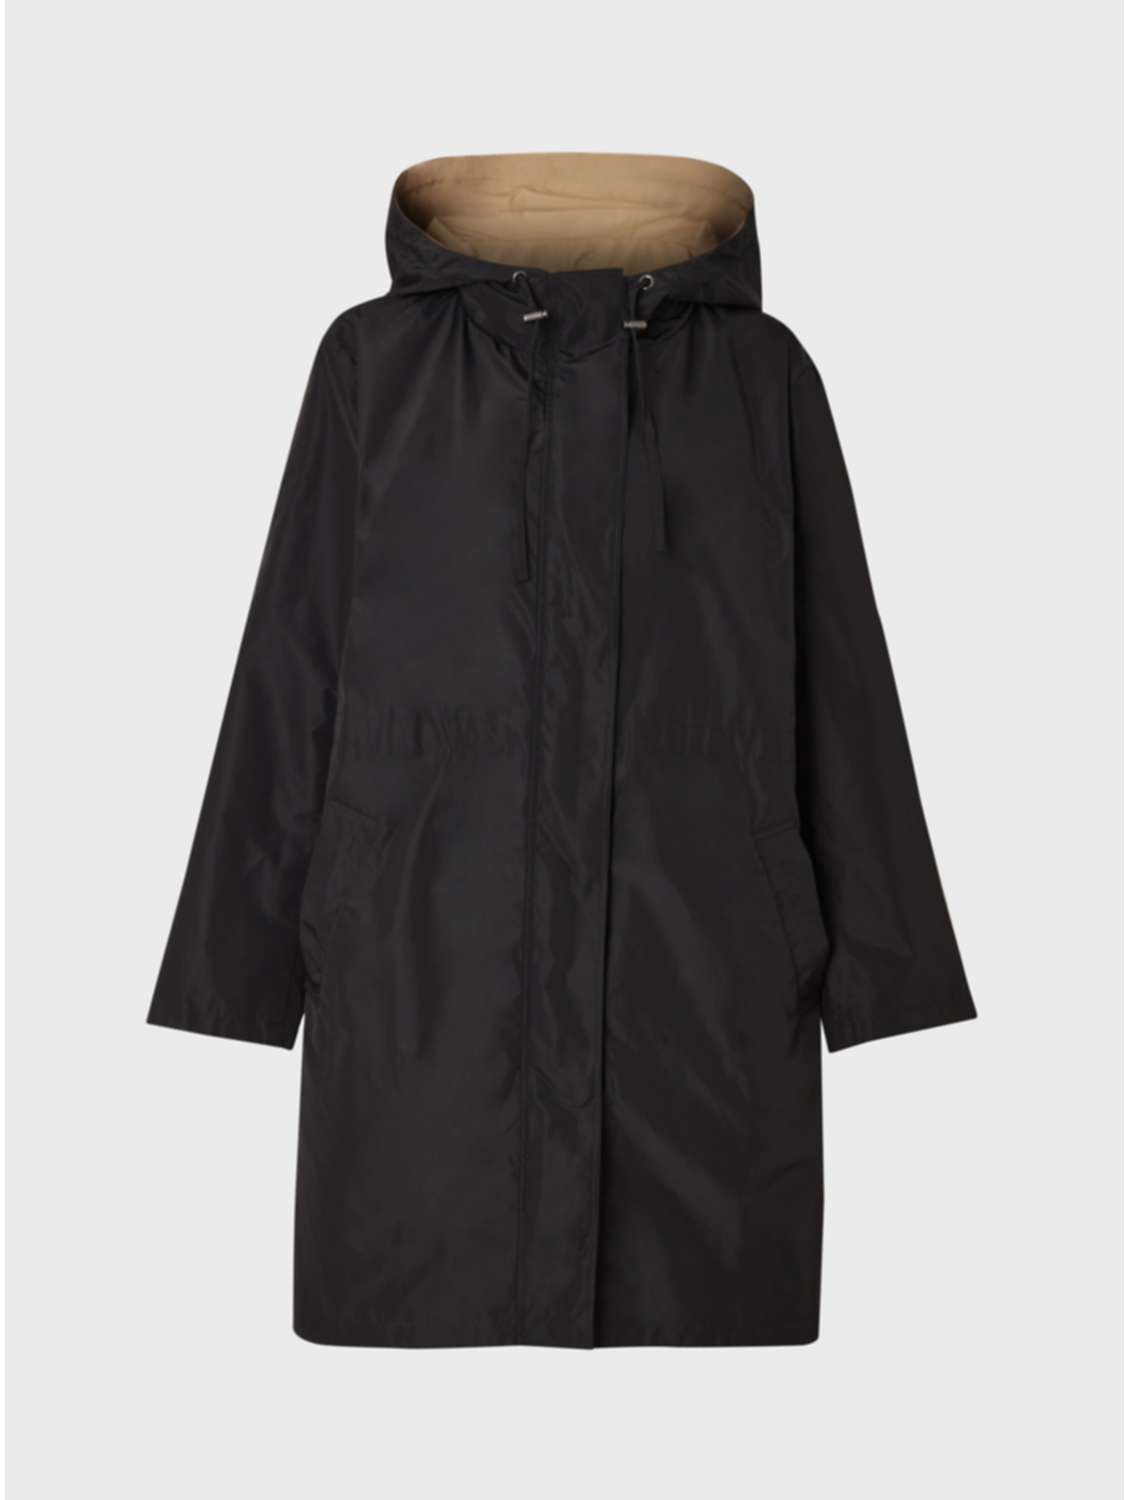 Buy Gerard Darel Safira Plain Coat, Black Online at johnlewis.com